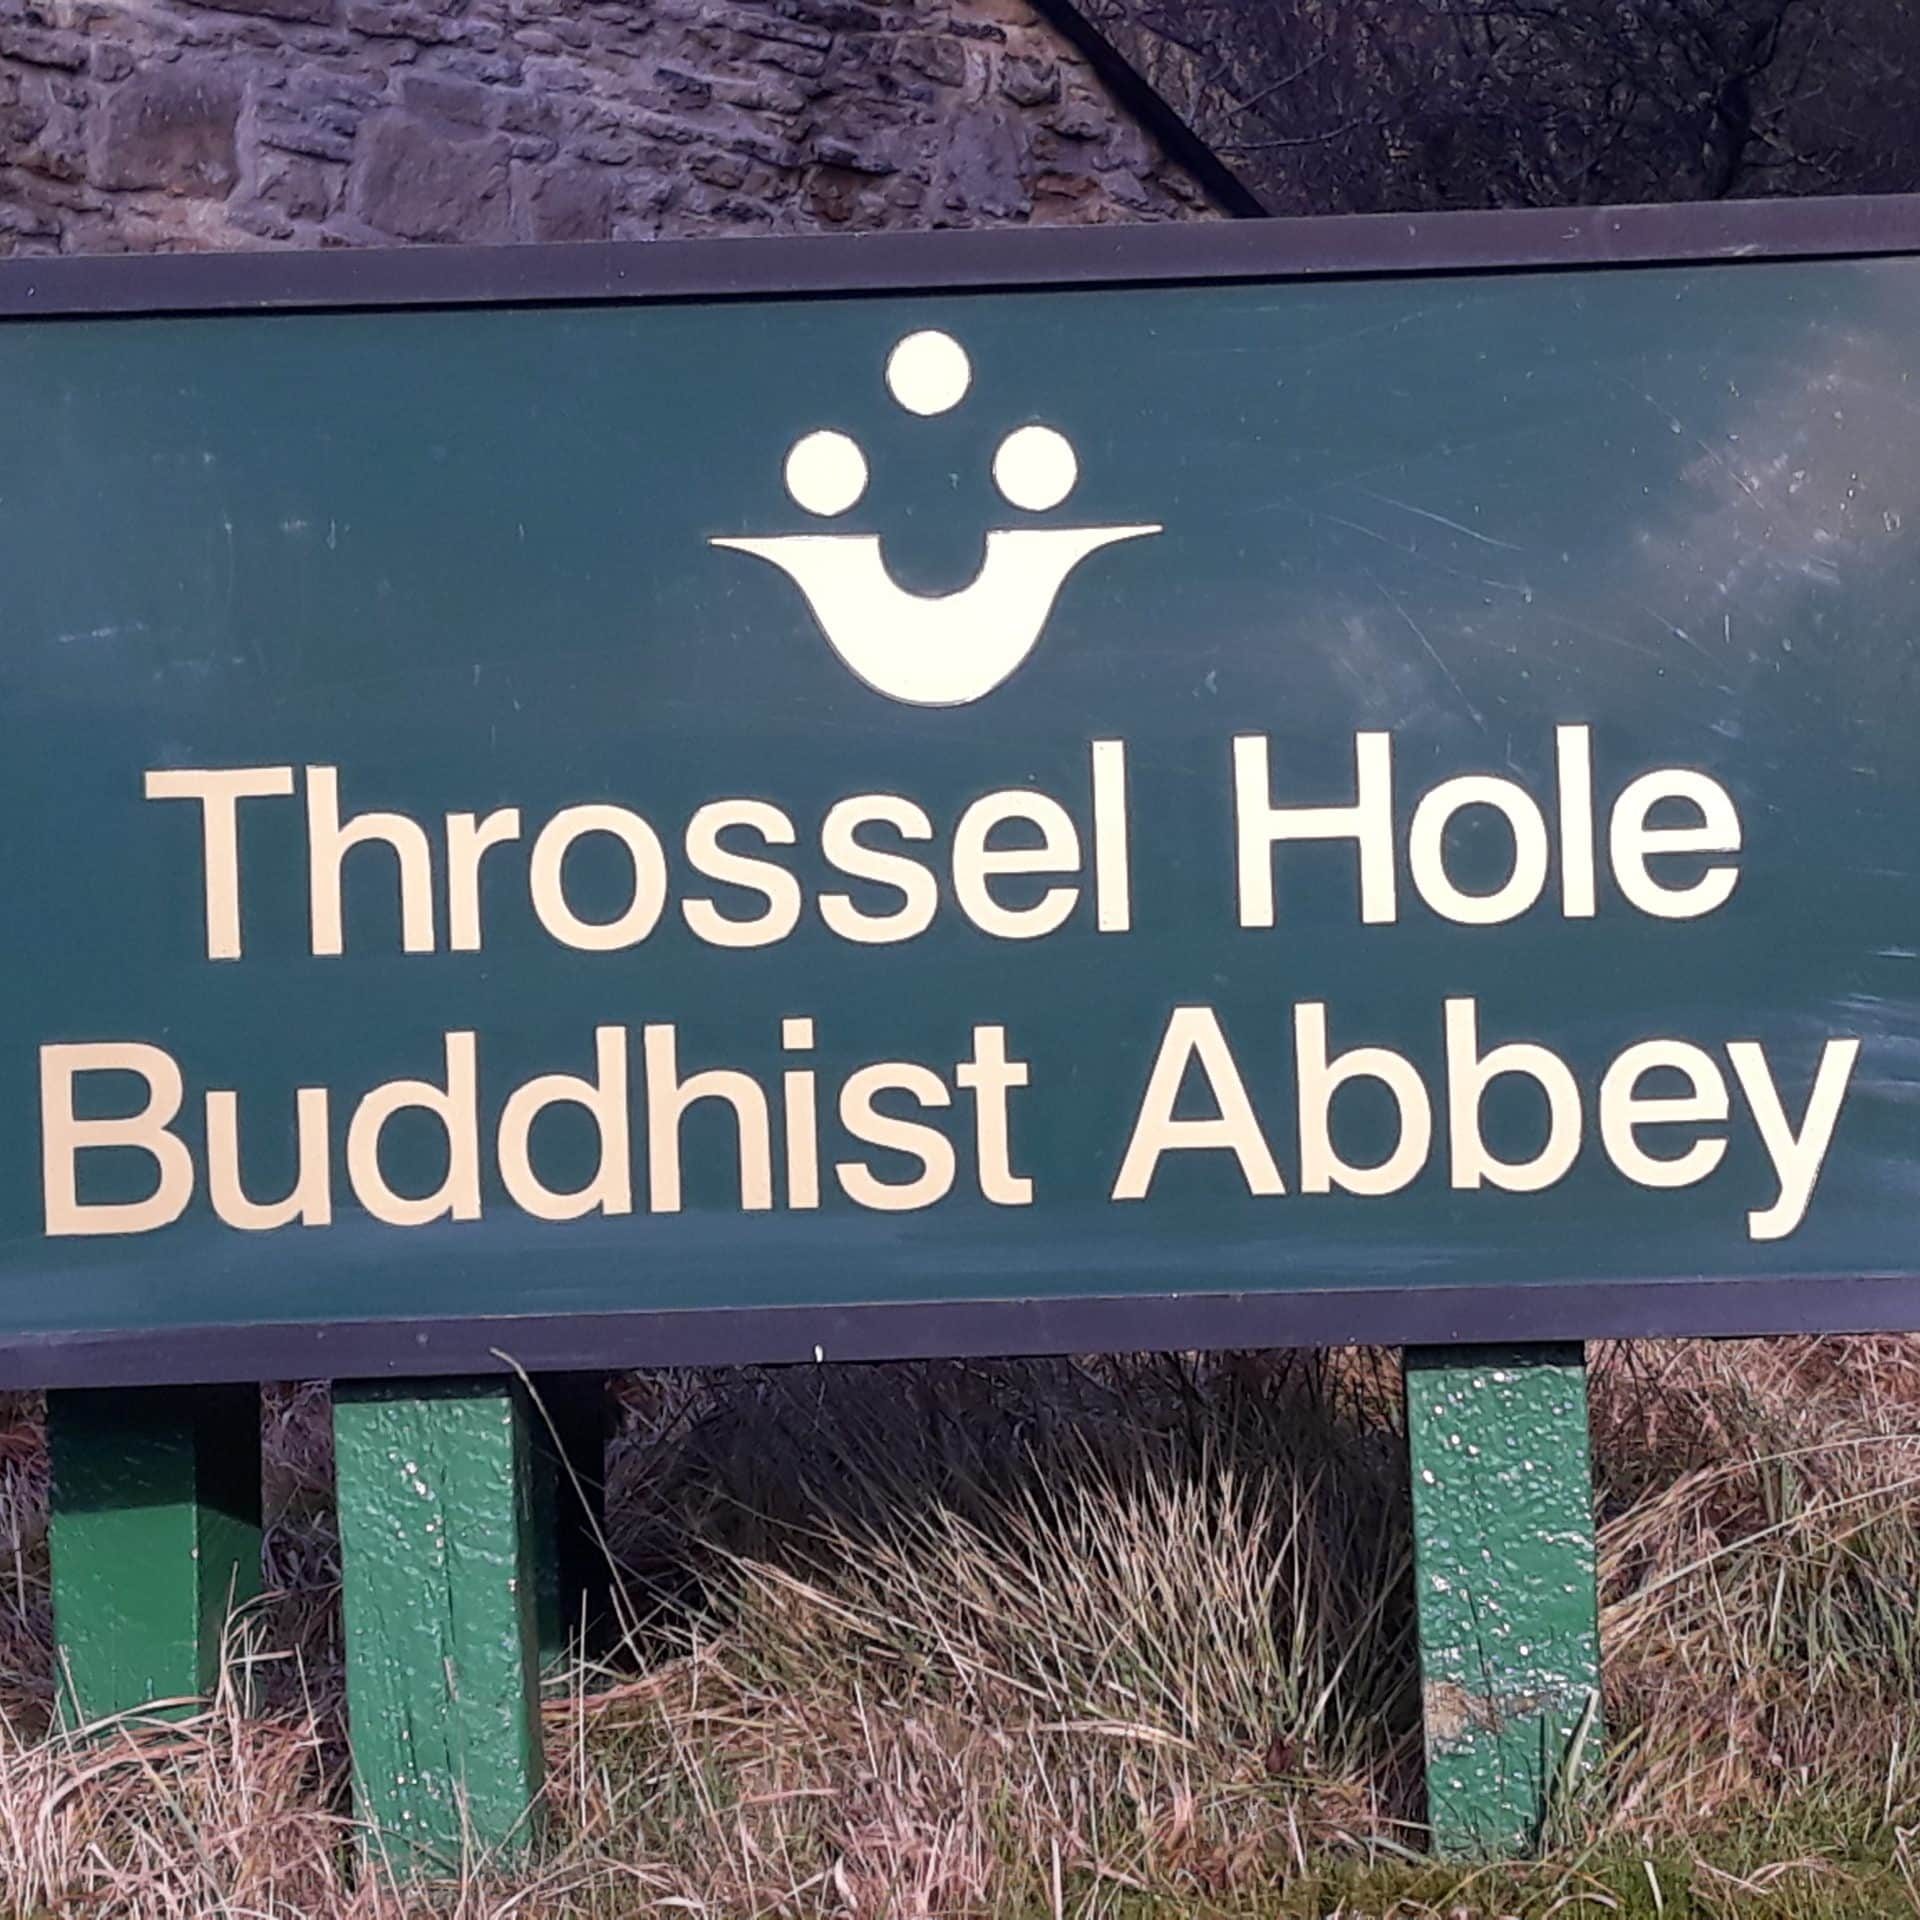 Throssel Hole Buddhist abbey